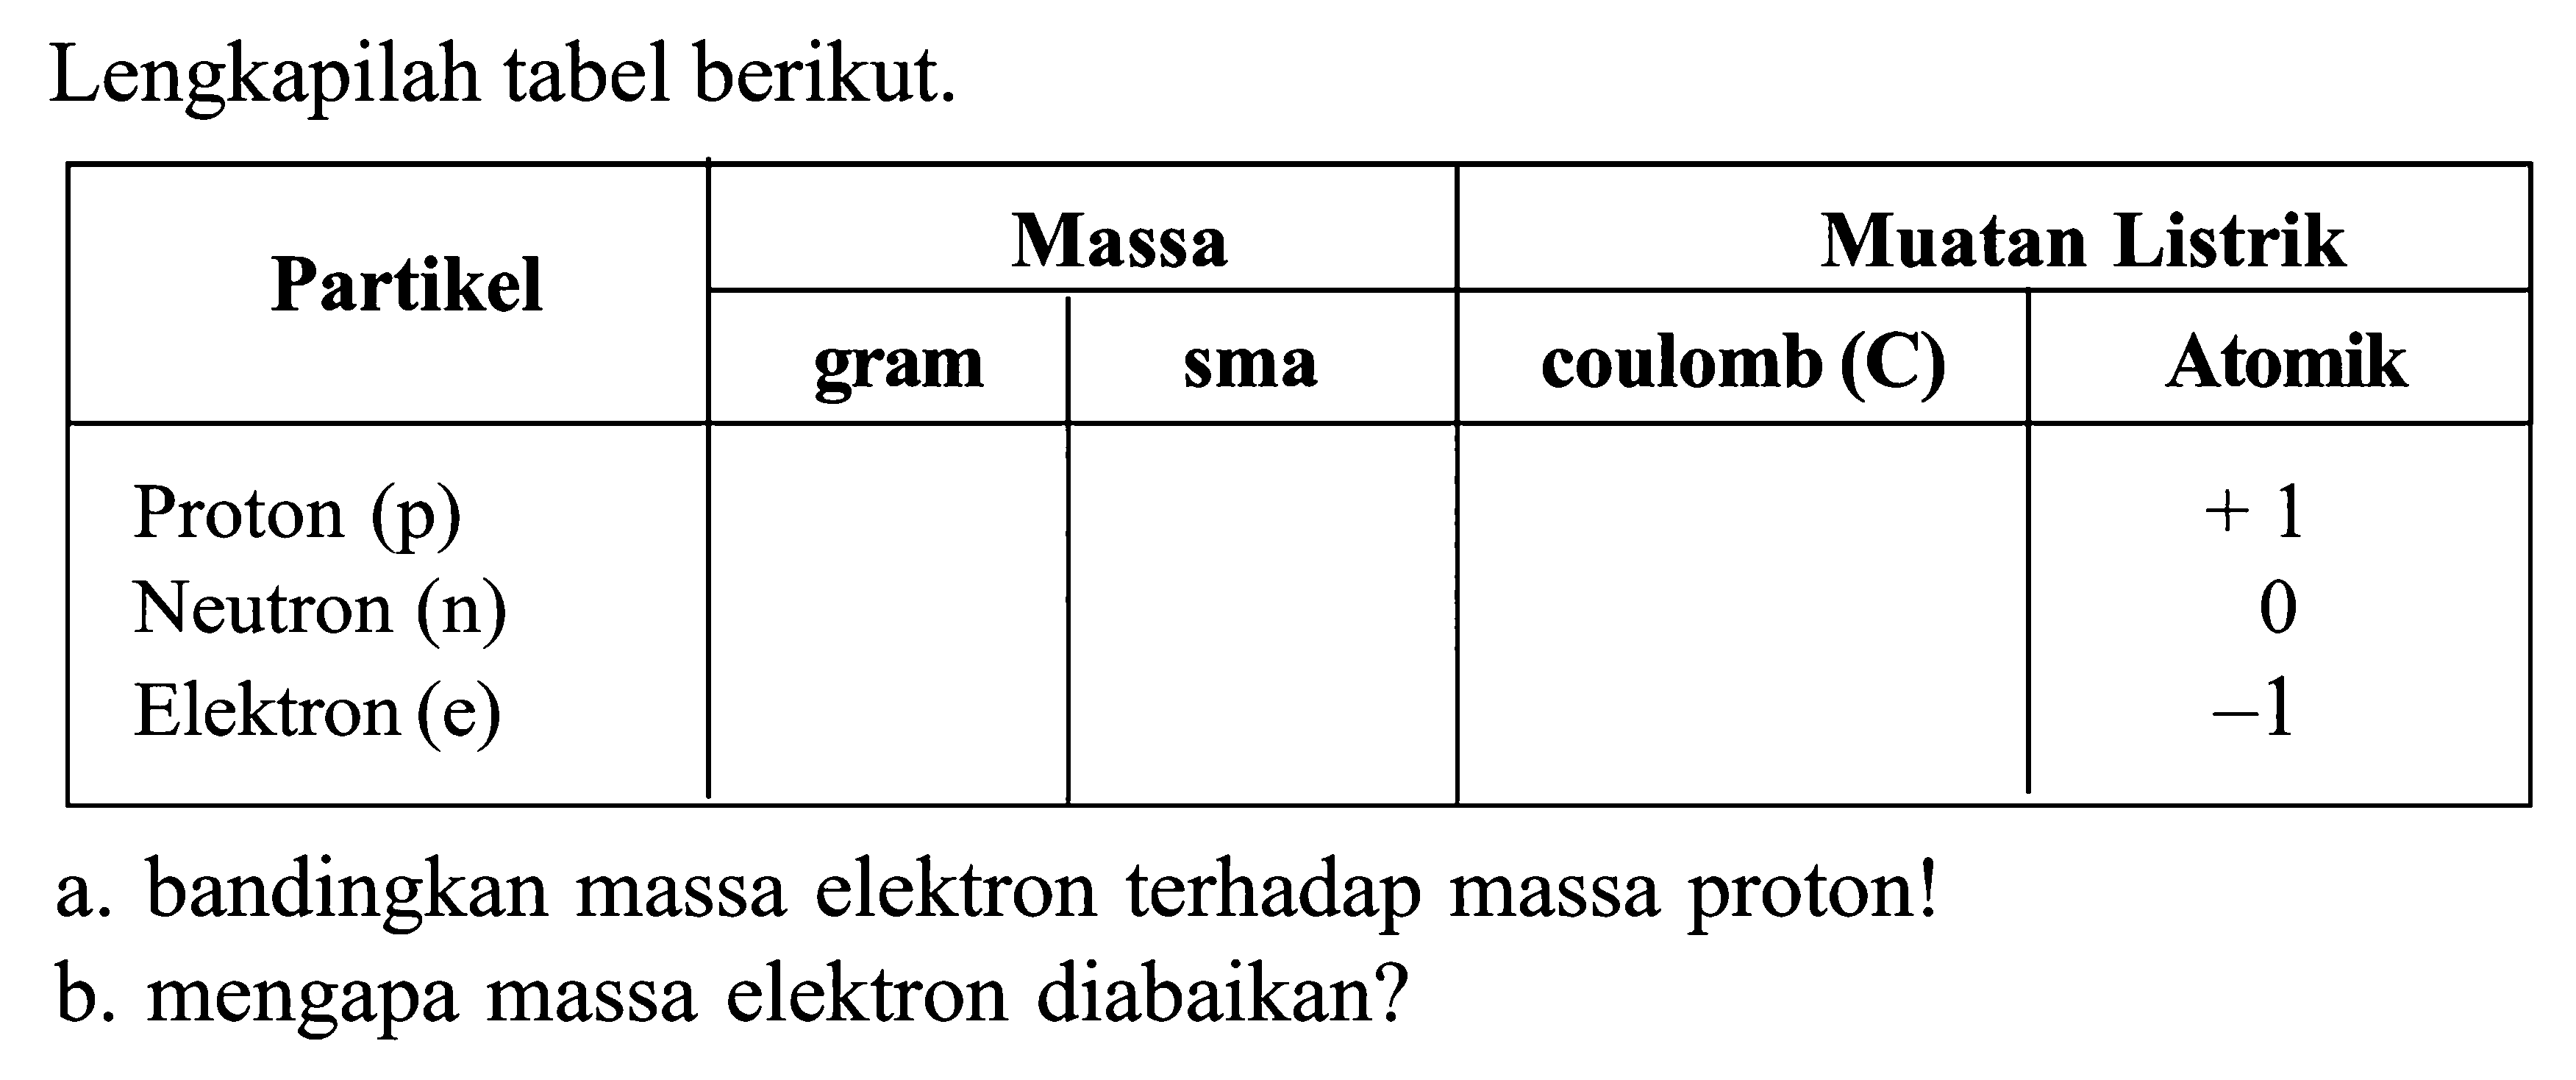 Lengkapilah tabel berikut: a. bandingkan massa elektron terhadap massa proton? b. mengapa massa elektron diabaikan?